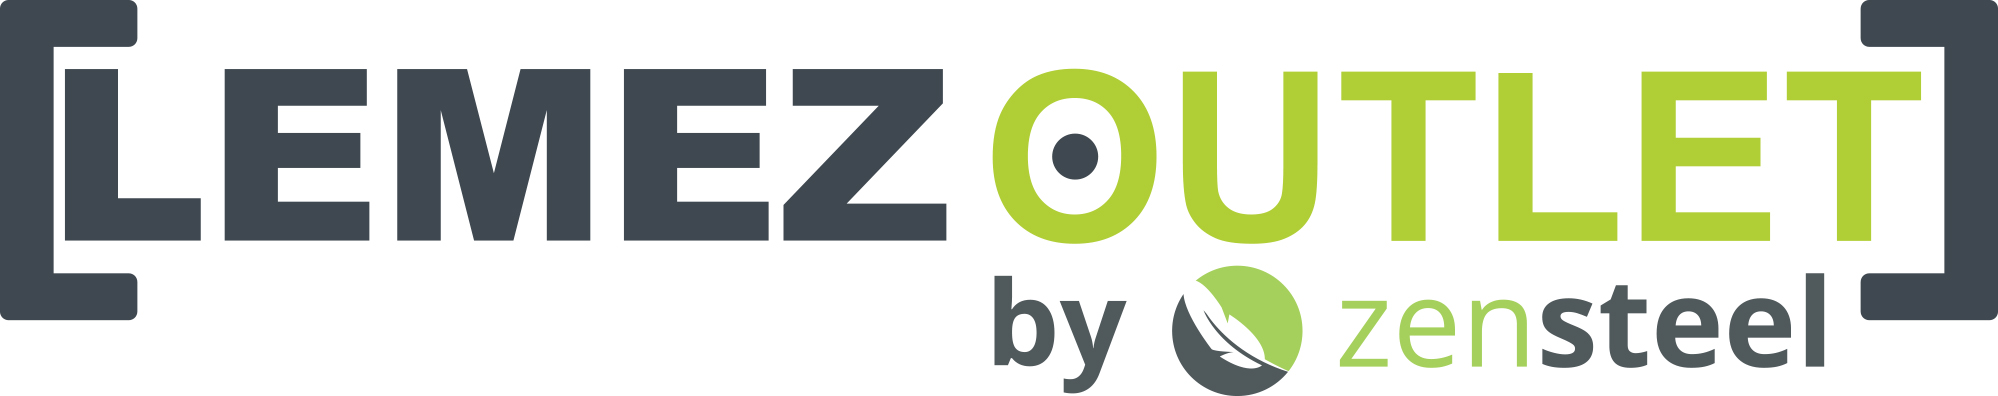 lemezoutlet by zen steel logo